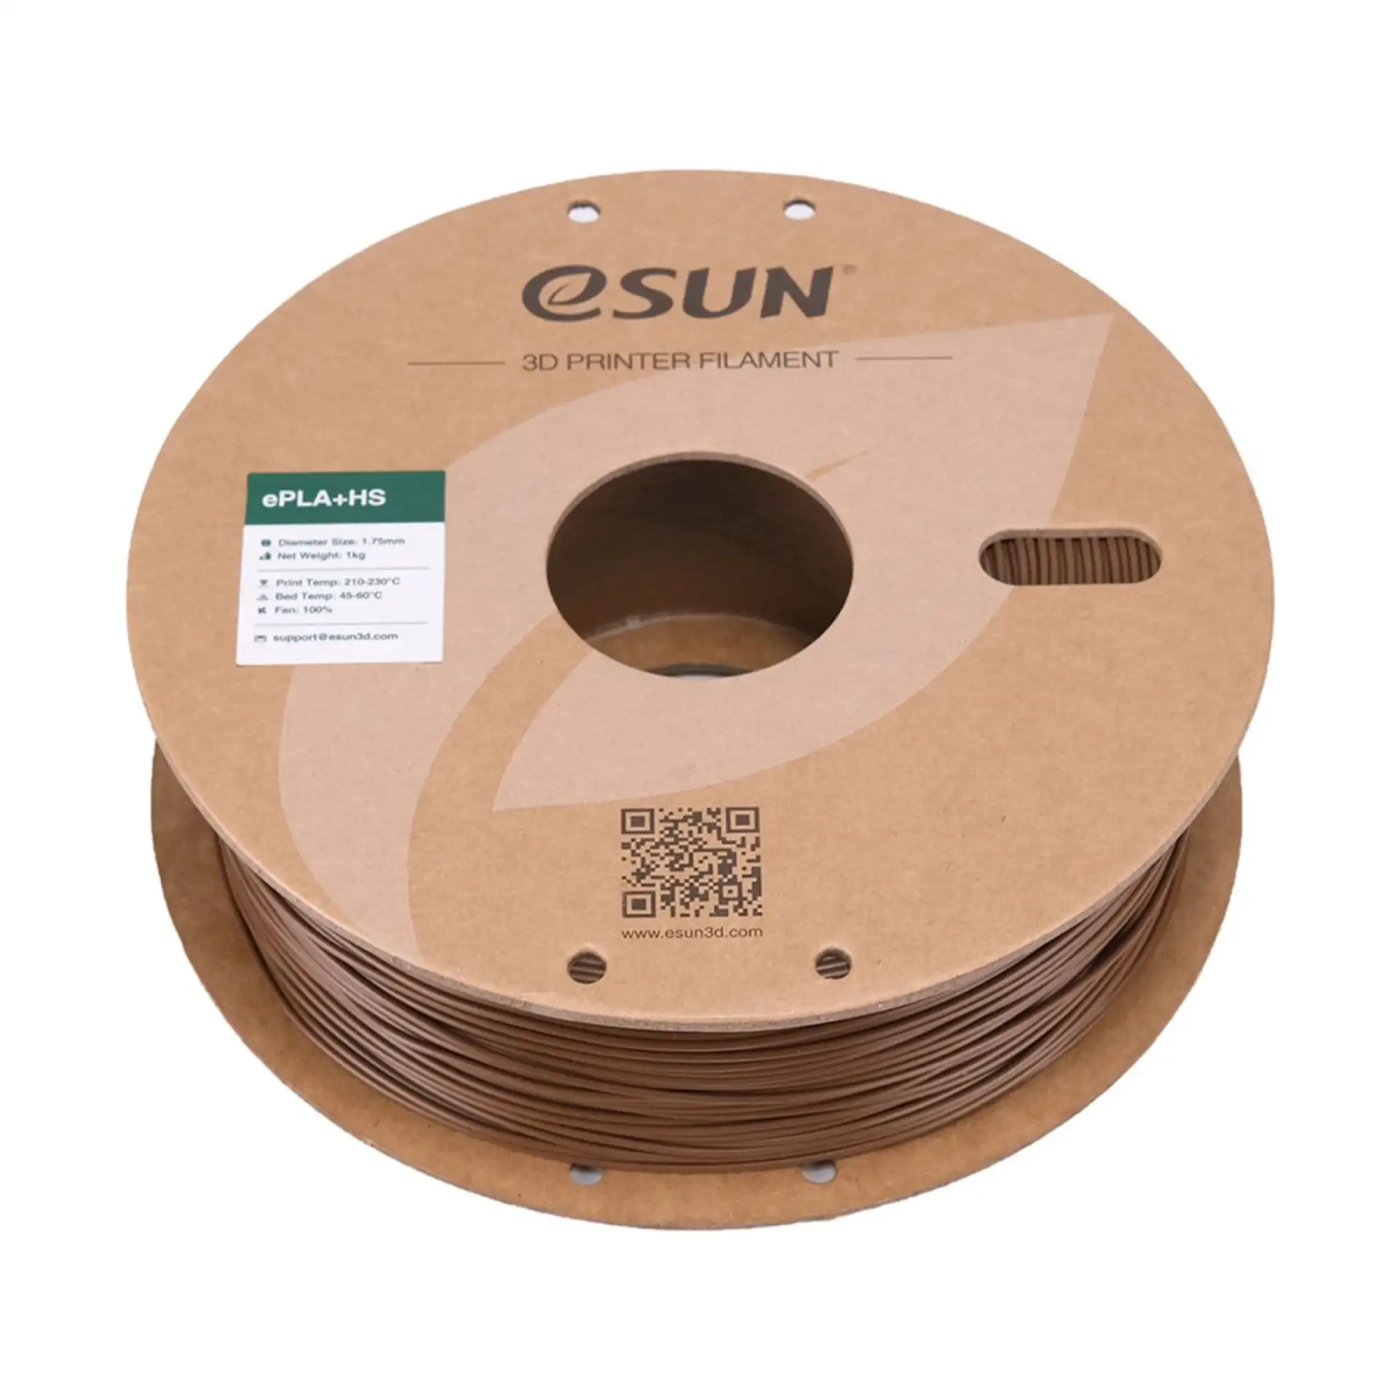 Купить ePLA Plus HS Filament (пластик) для 3D принтера Esun 1кг, 1.75мм, коричневый (EPLA+HS-P175C1) - фото 3